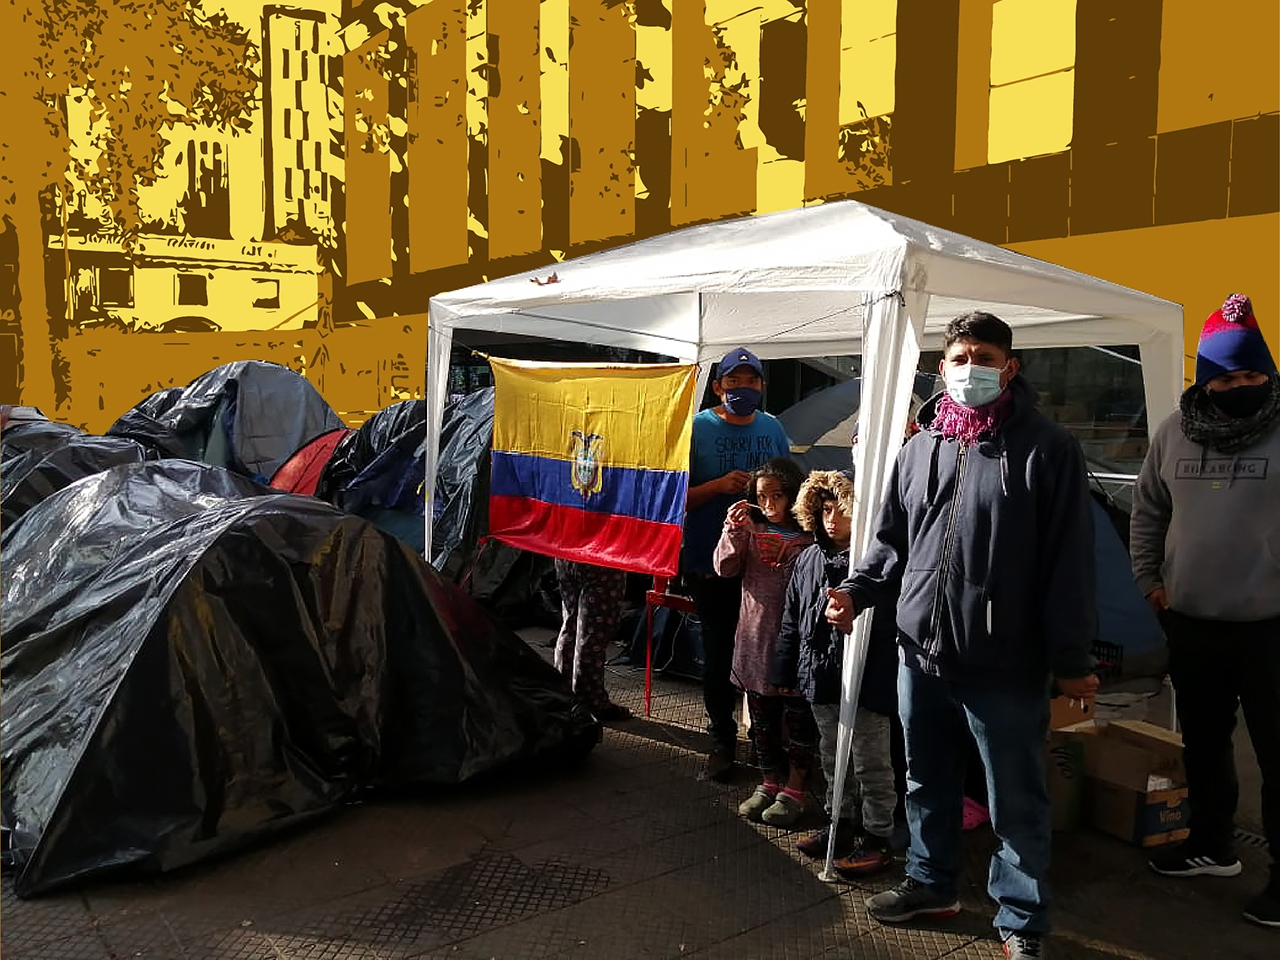 En este momento estás viendo Campamento migrante ecuatoriano en Santiago de Chile. ¡Alerta!